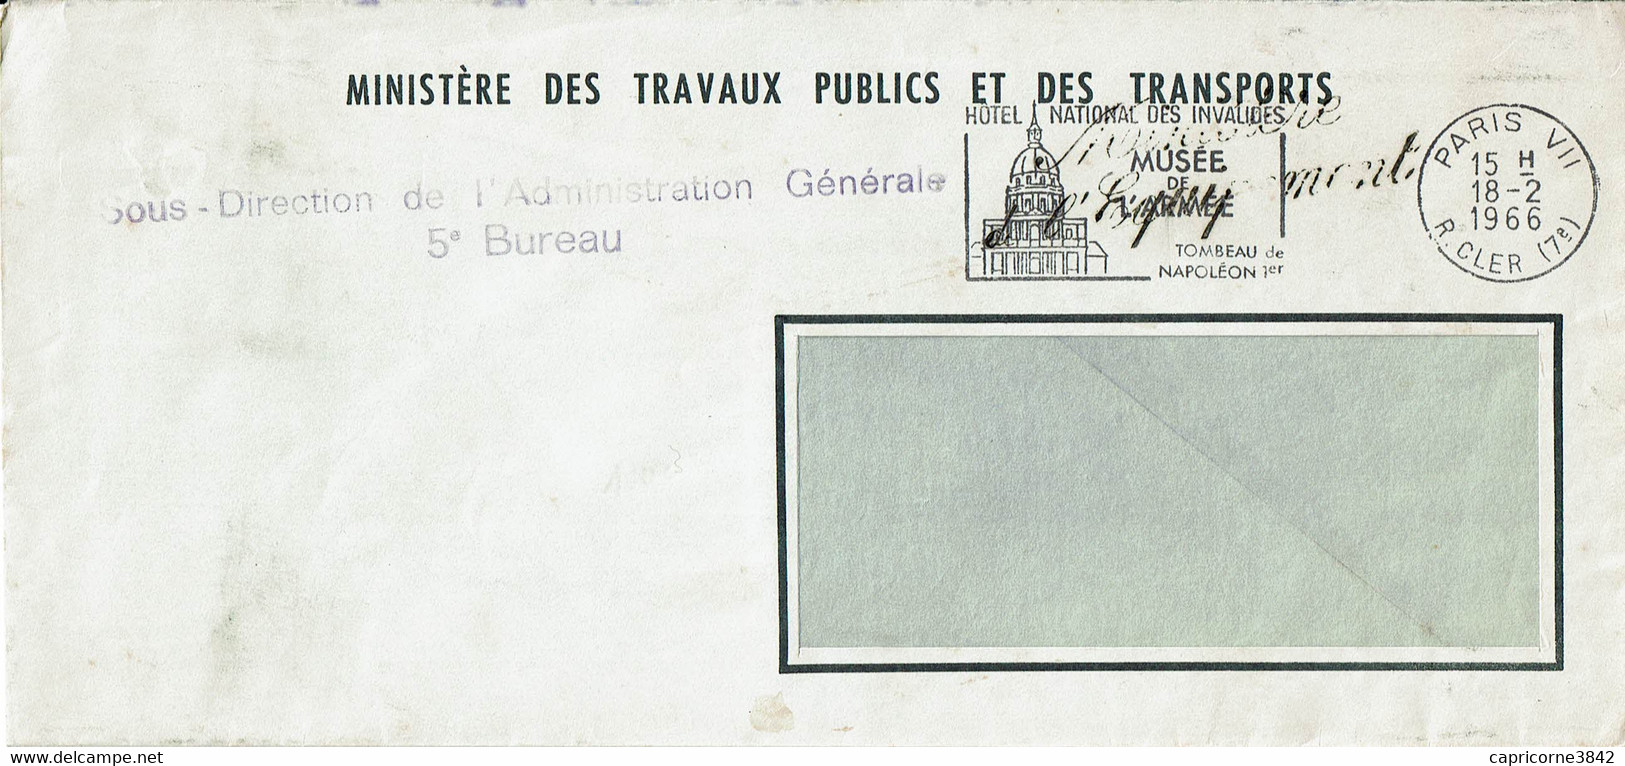 1966 - Lettre En Franchise - Cachet Manuel "MINISTERE DE L'EQUIPEMENT" - Civil Frank Covers